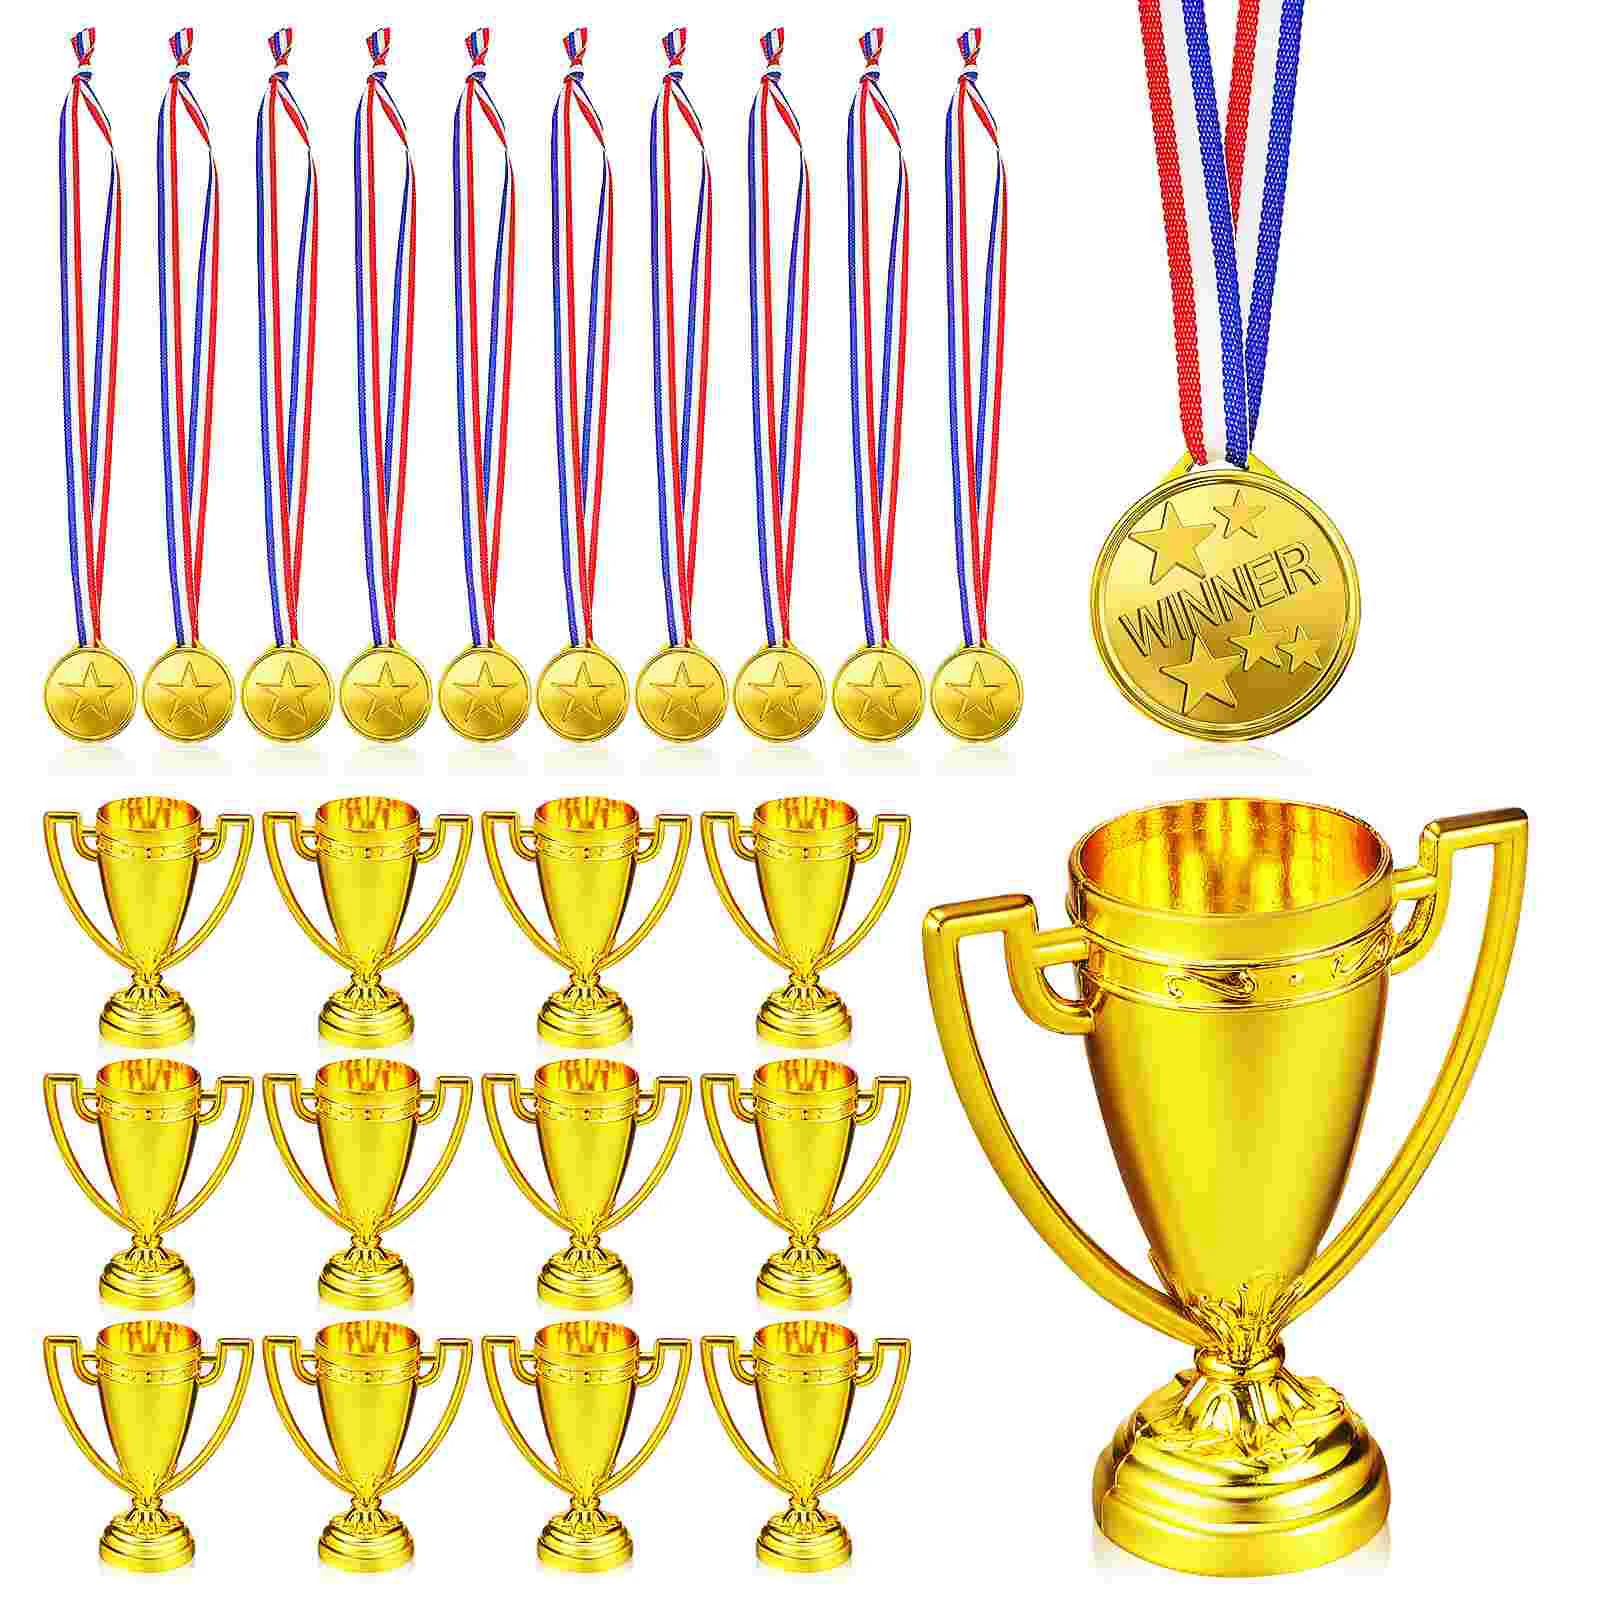 

Пластиковый трофей с 18 медалями, призами для детей на день занятий спортом, гимнастические соревнования